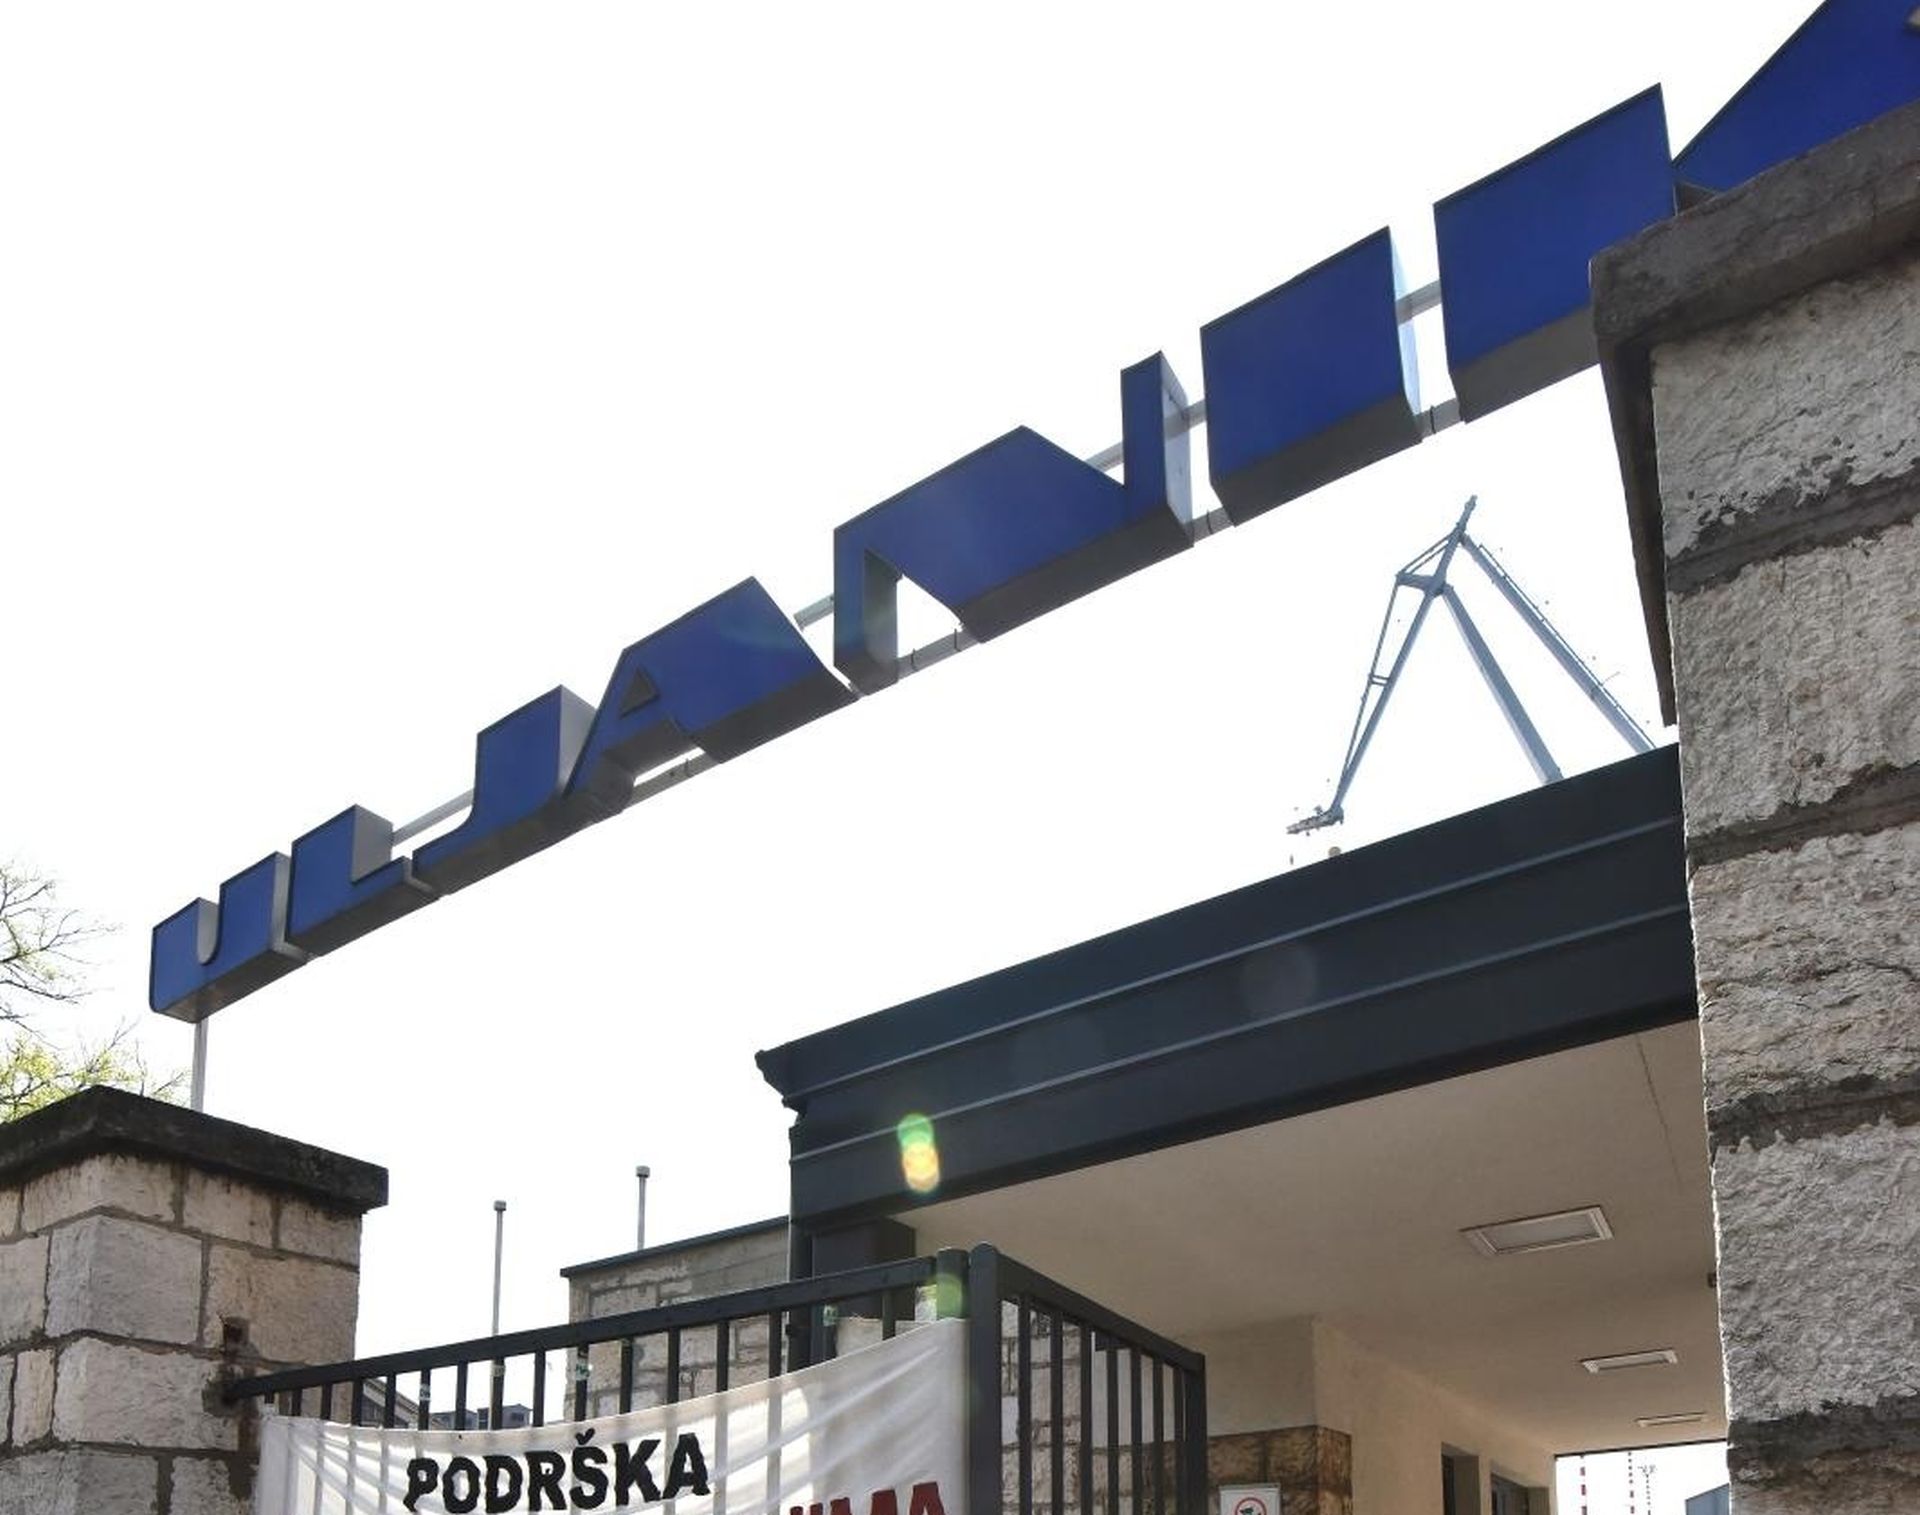 10.04.2019., Pula - Na glavnoj ulaznoj porti brodogradilista Uljanik danas postavljen transparent s pozivom na strajk gladju.
Photo: Dusko Marusic /PIXSELL